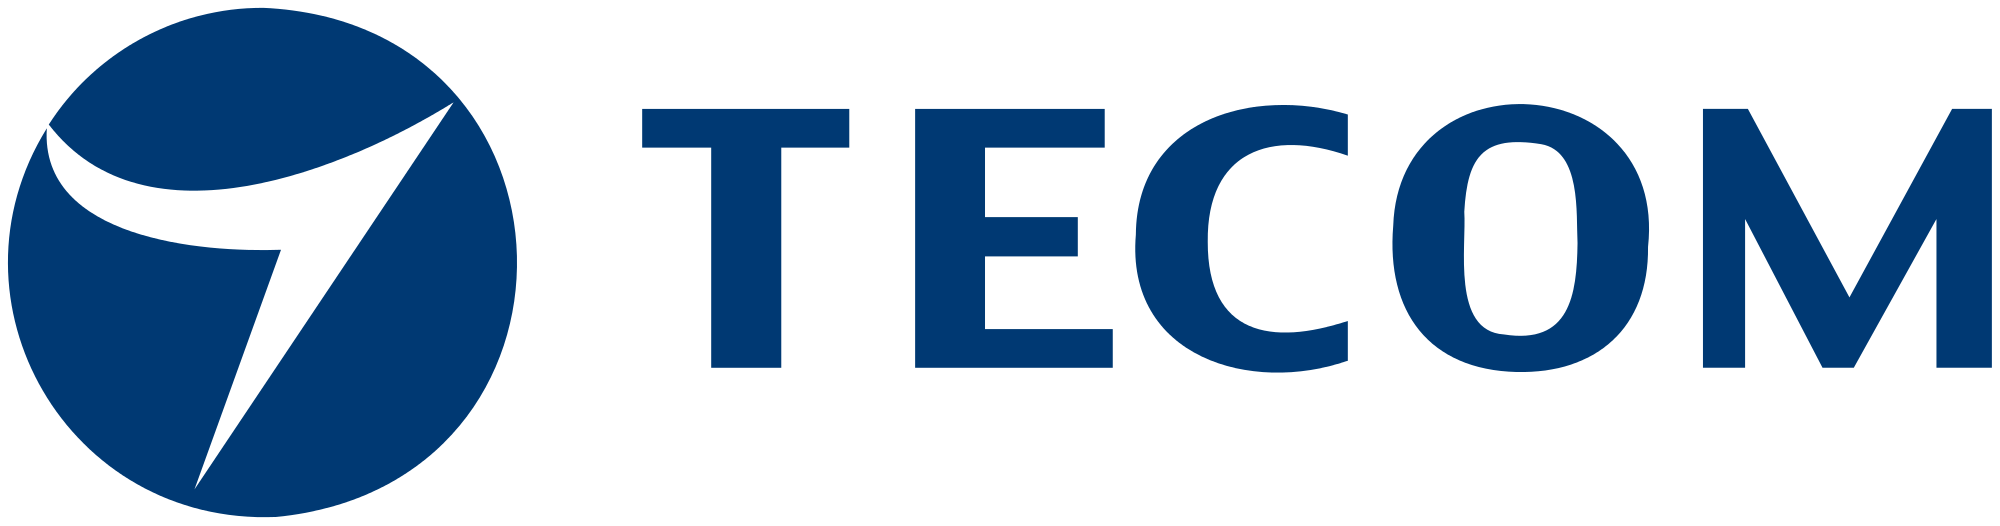 TECOM Brand Logo